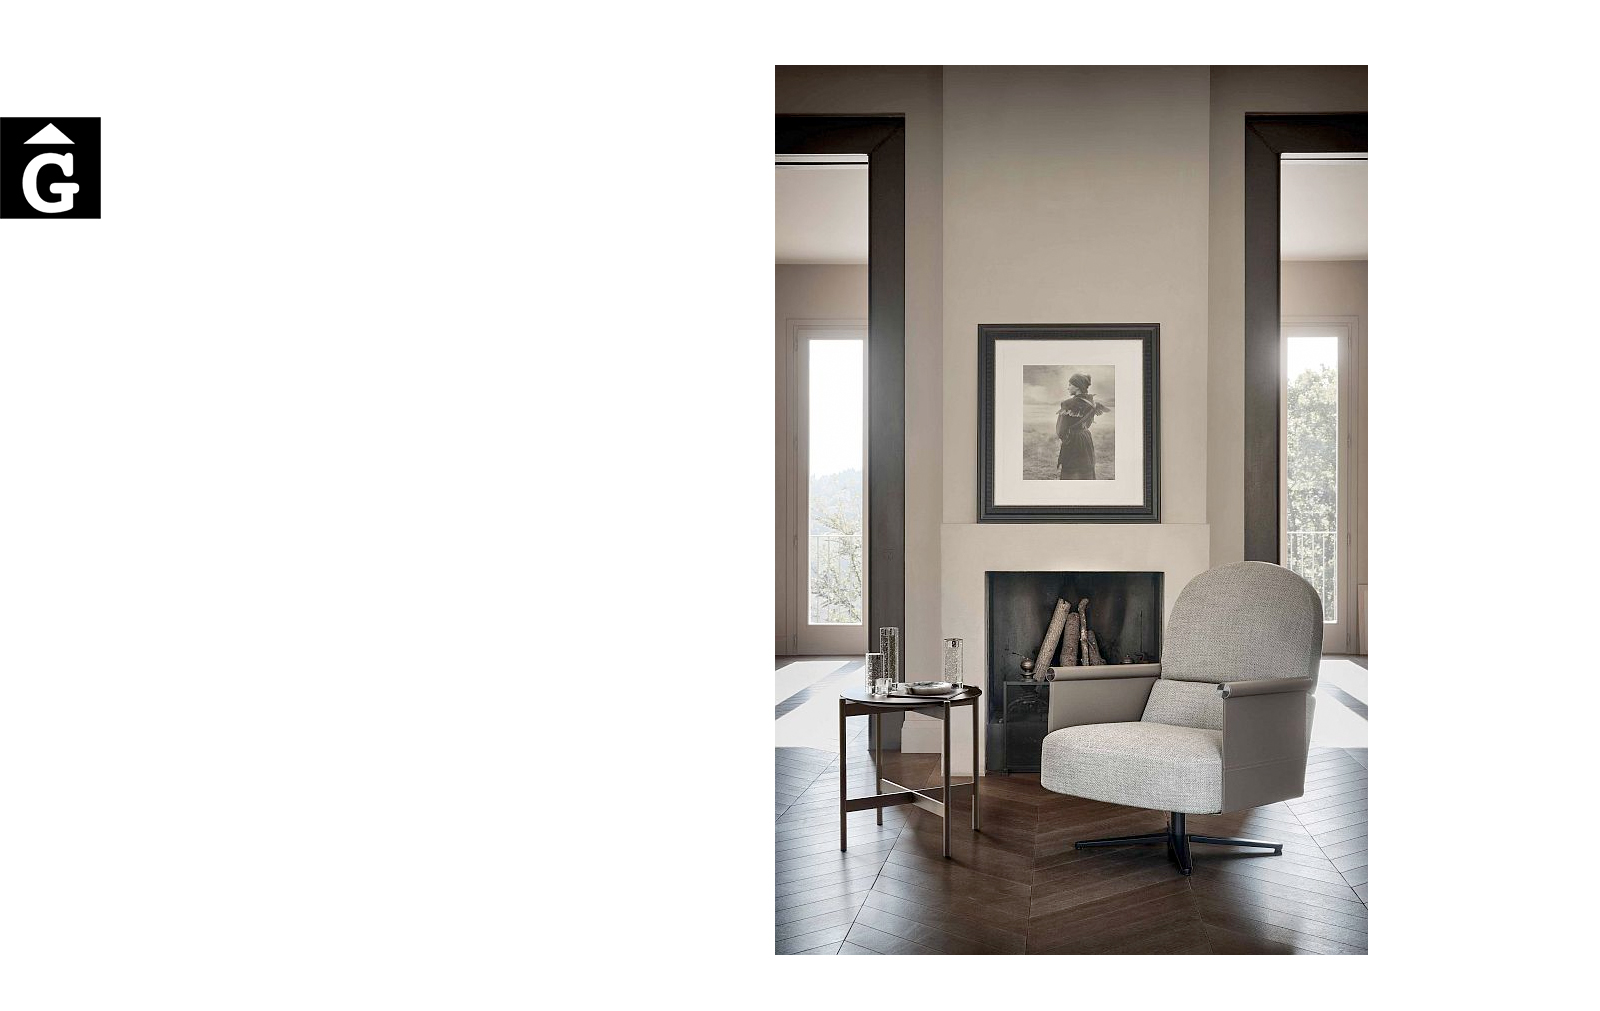 Butaca Beyl alta ambient sobri – Ditre Italia Sofas disseny i qualitat alta by mobles Gifreu